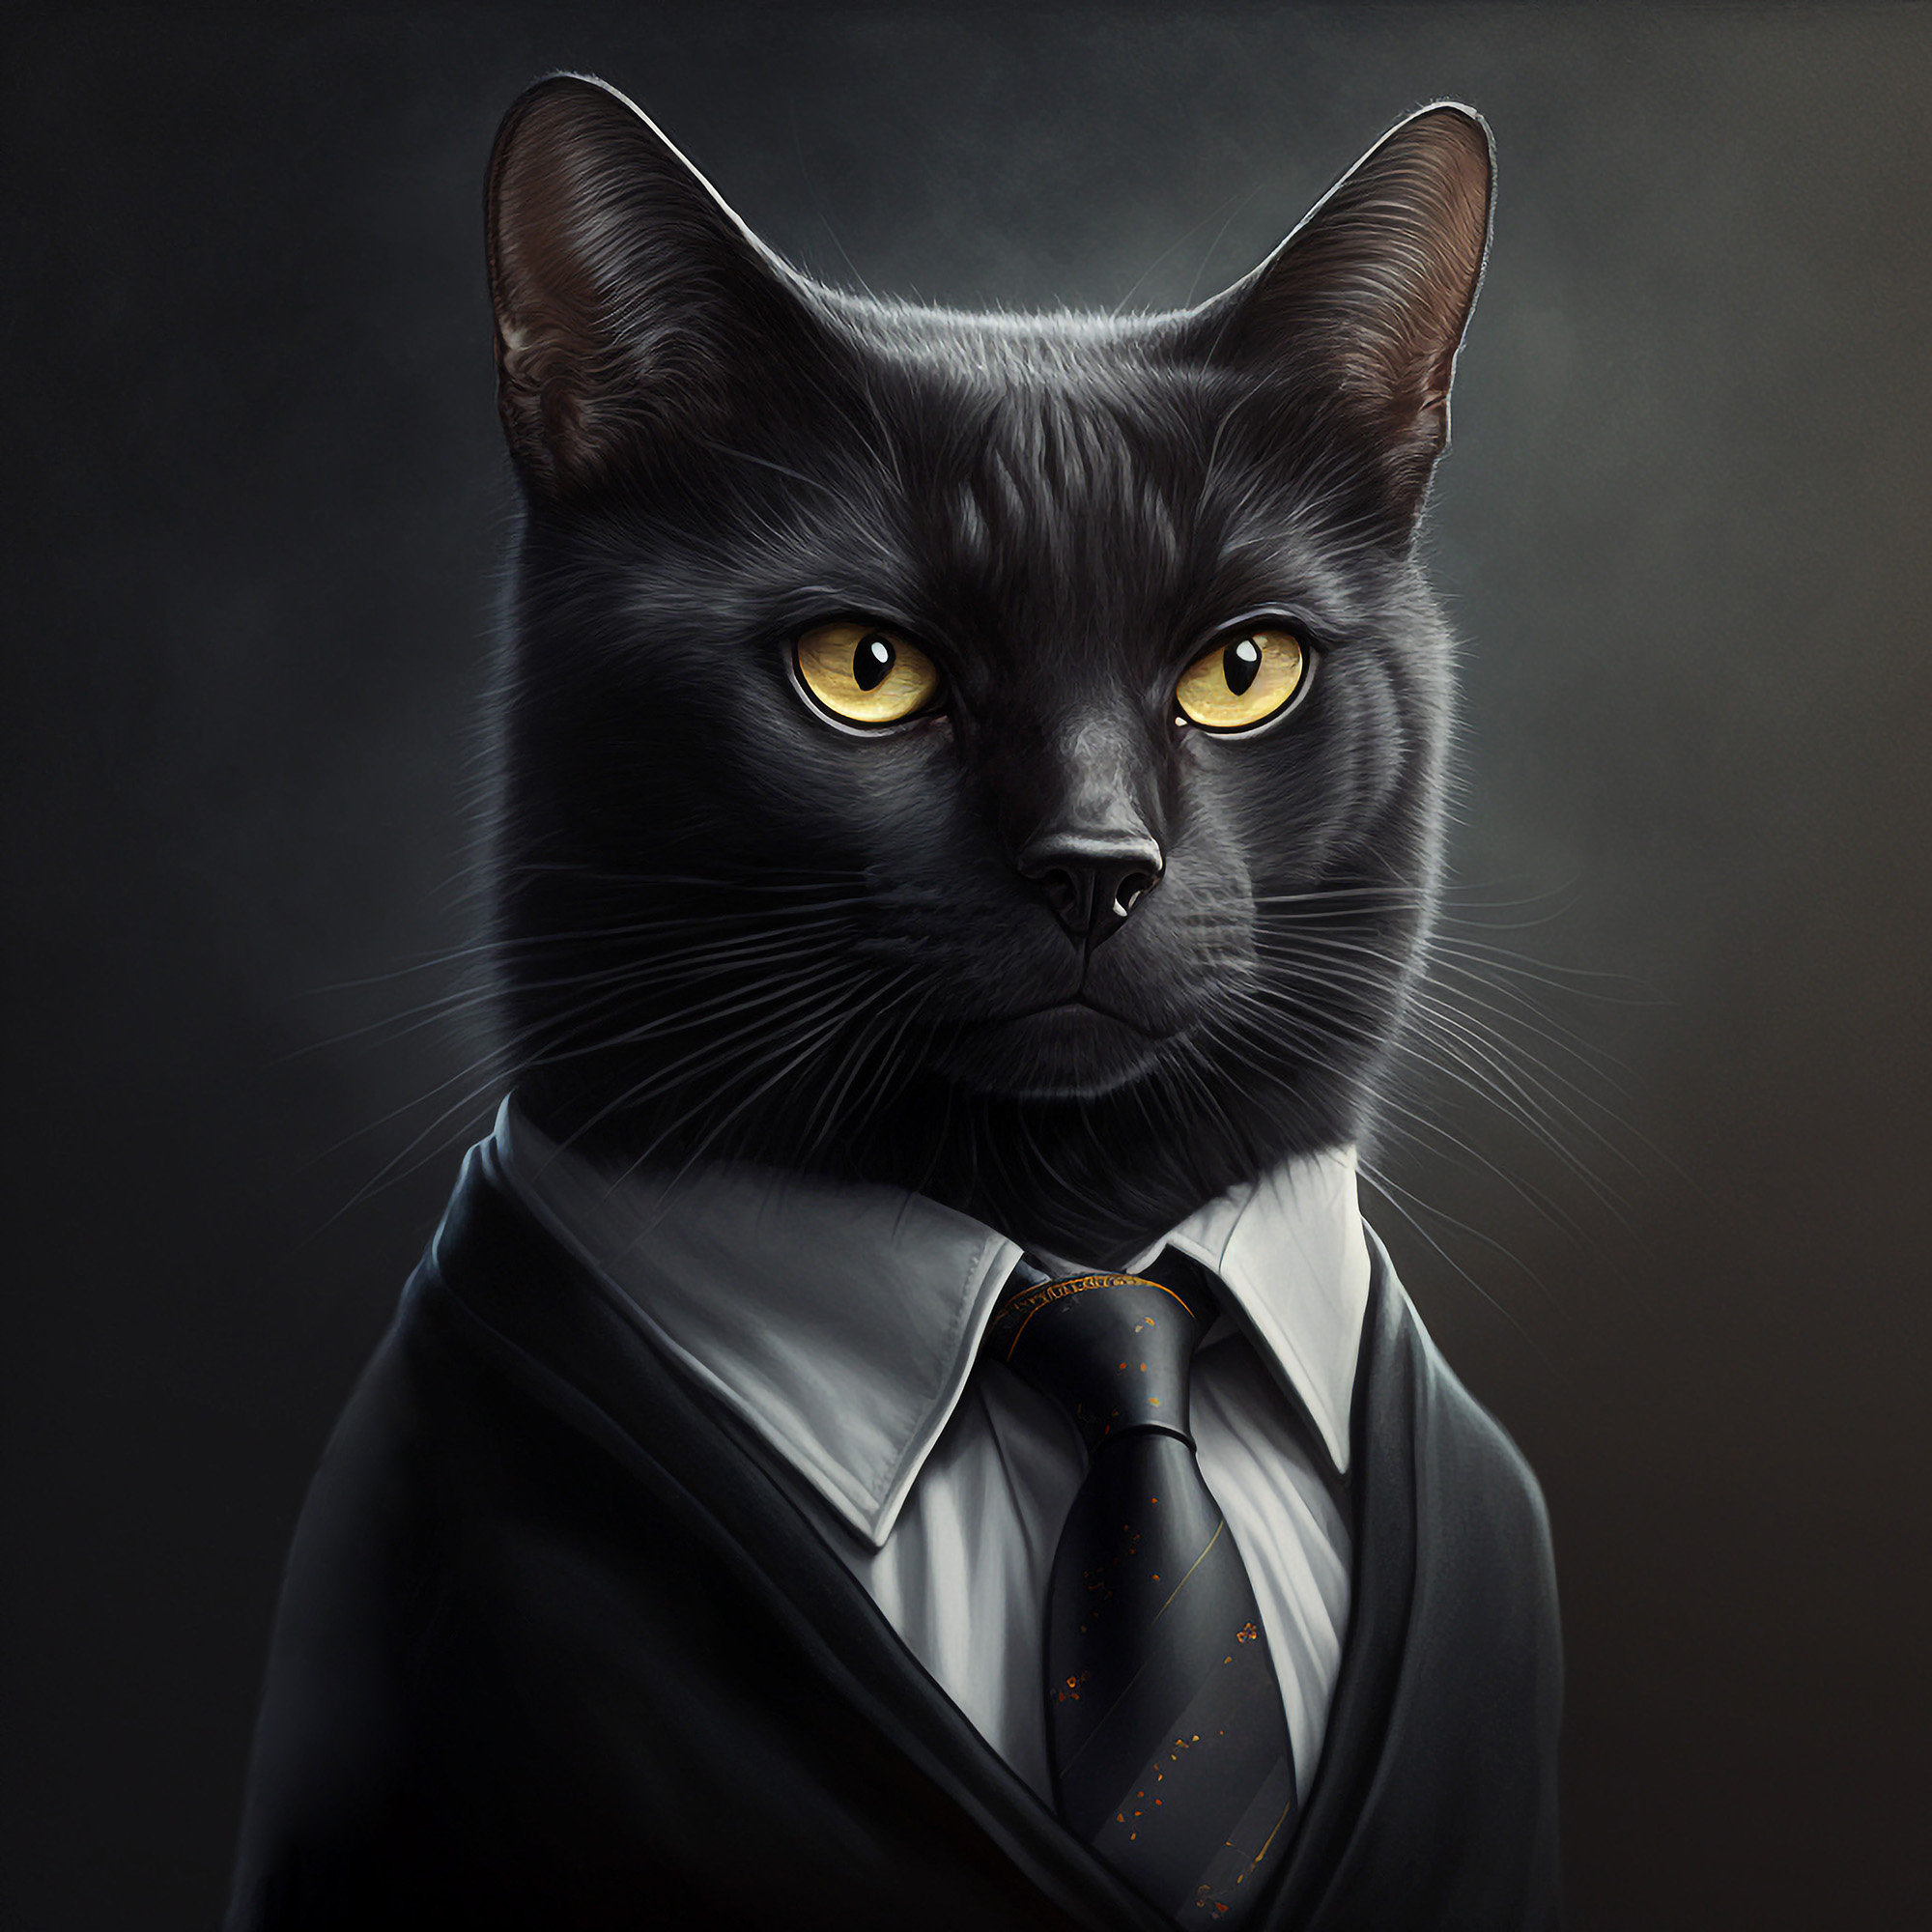 Cat wearing suit -  España